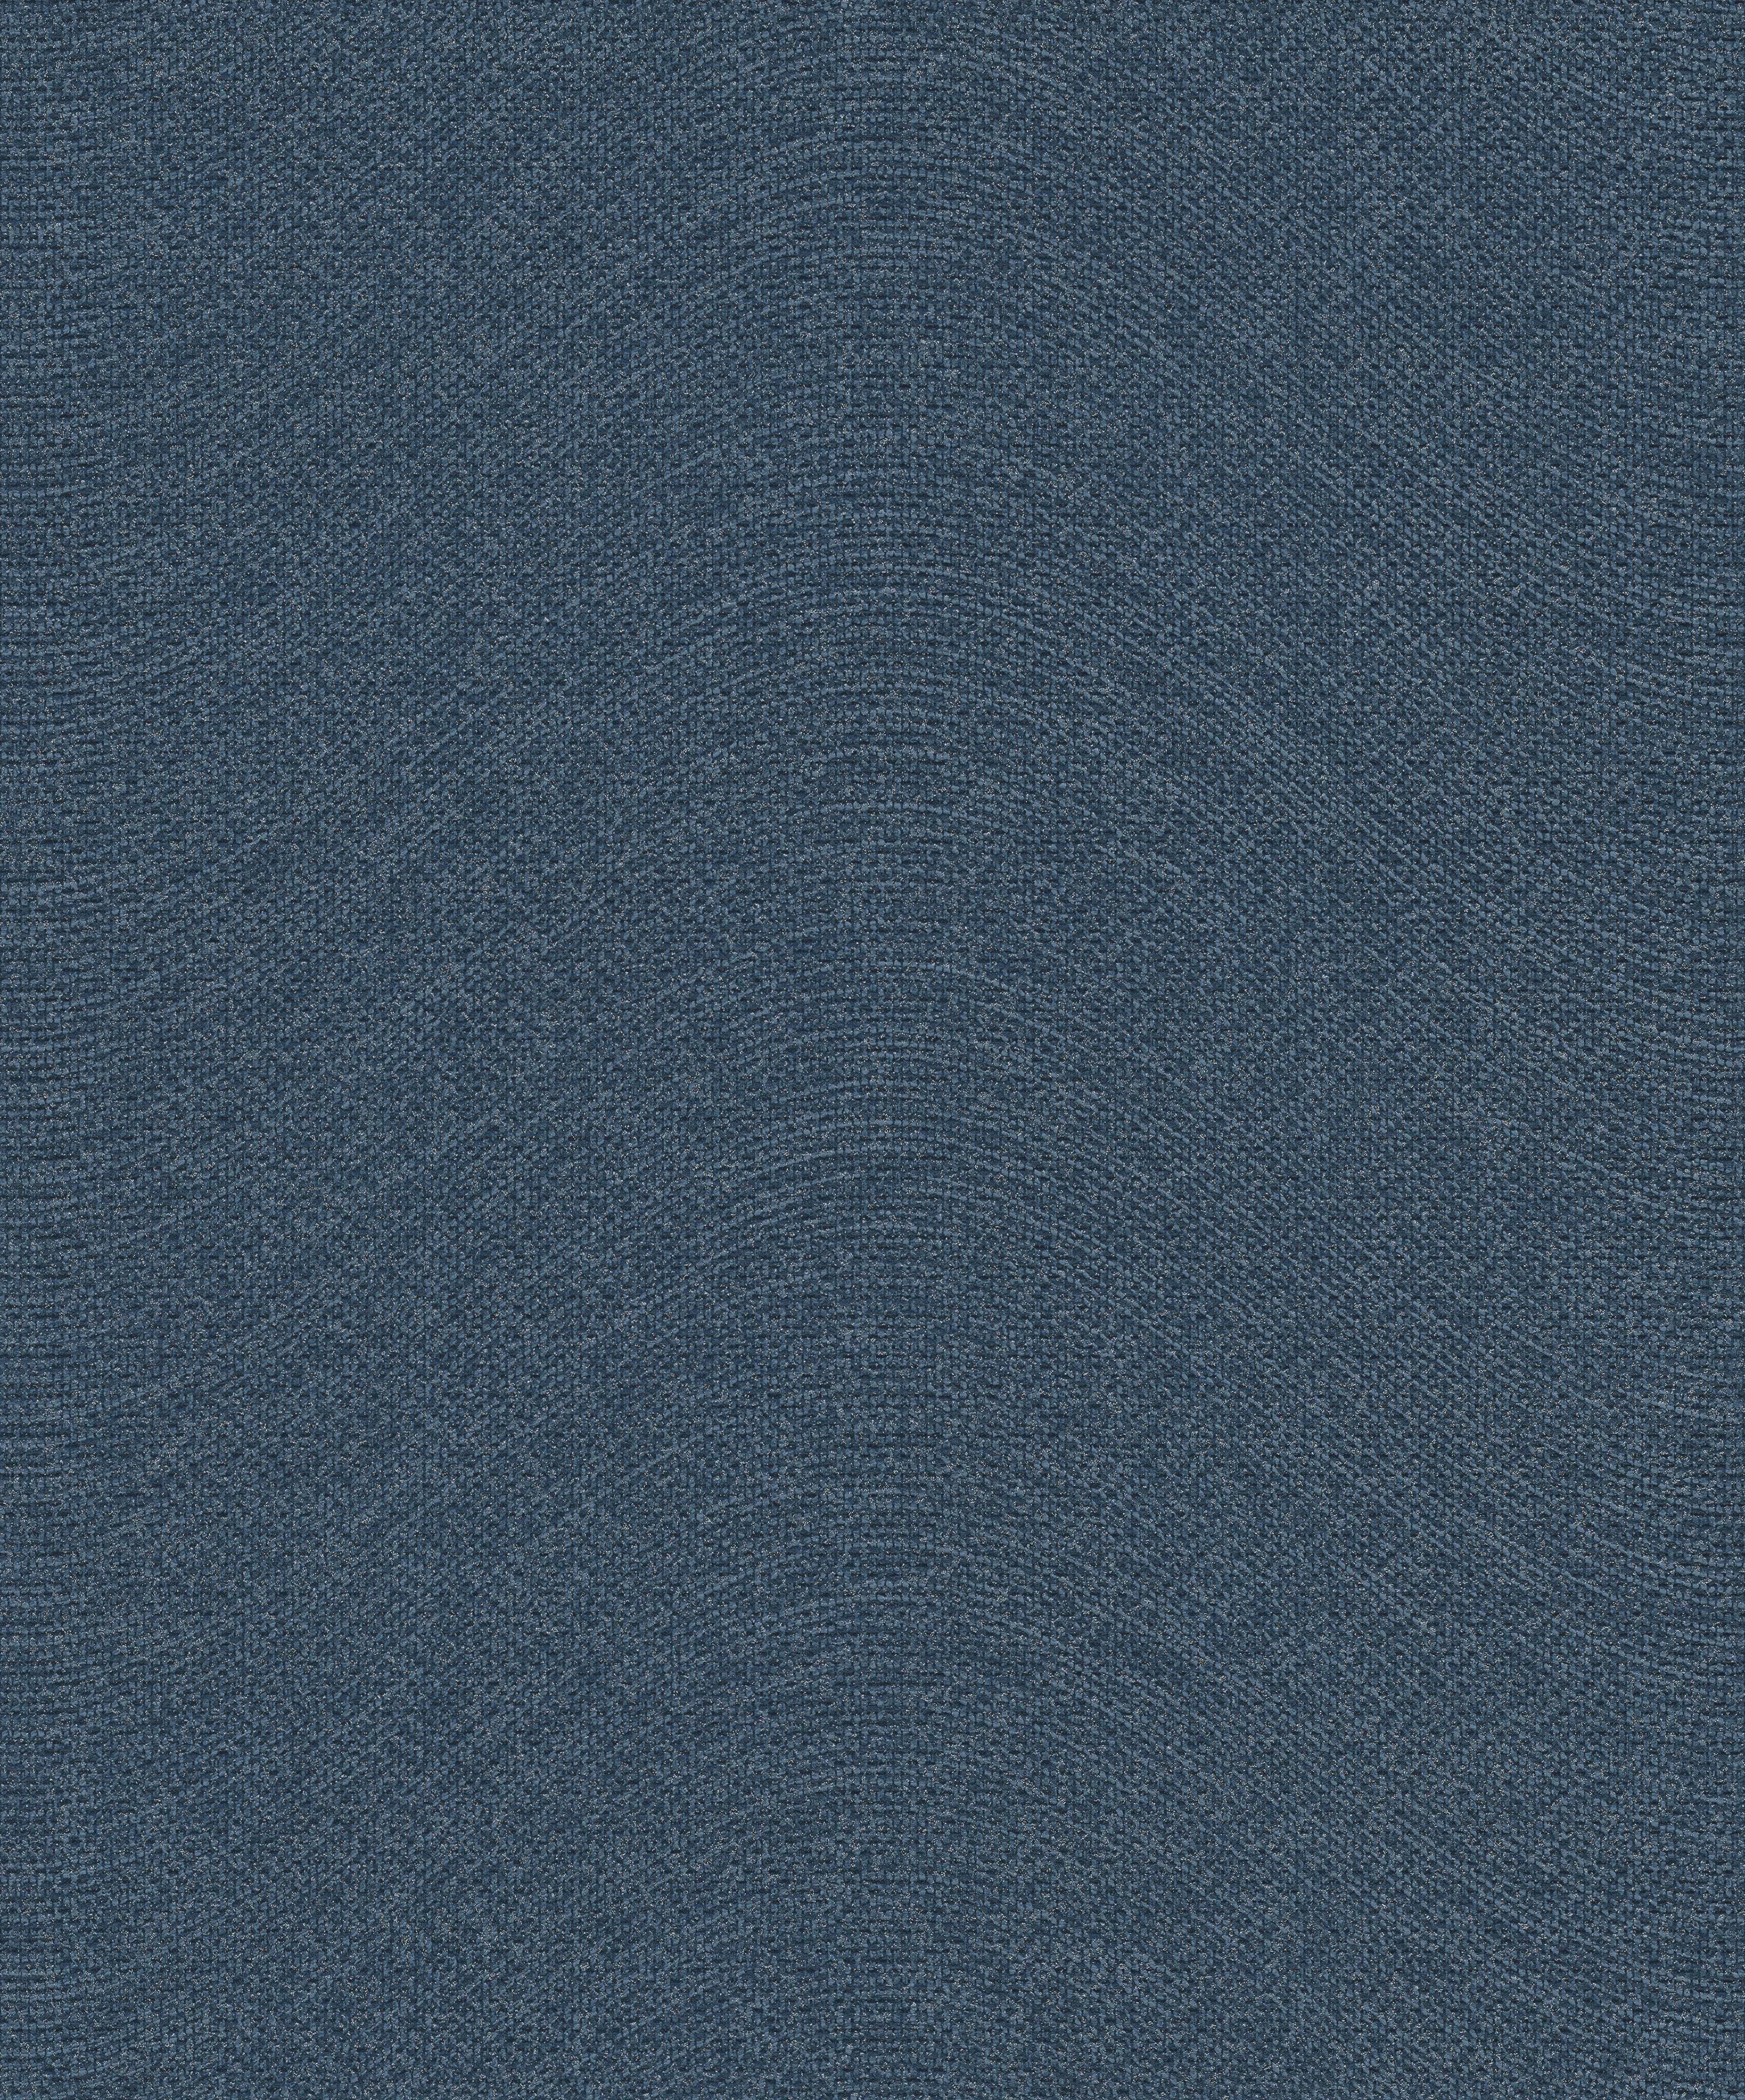 Modern hullám mintás vlies tapéta kék színben ezüst csillogással